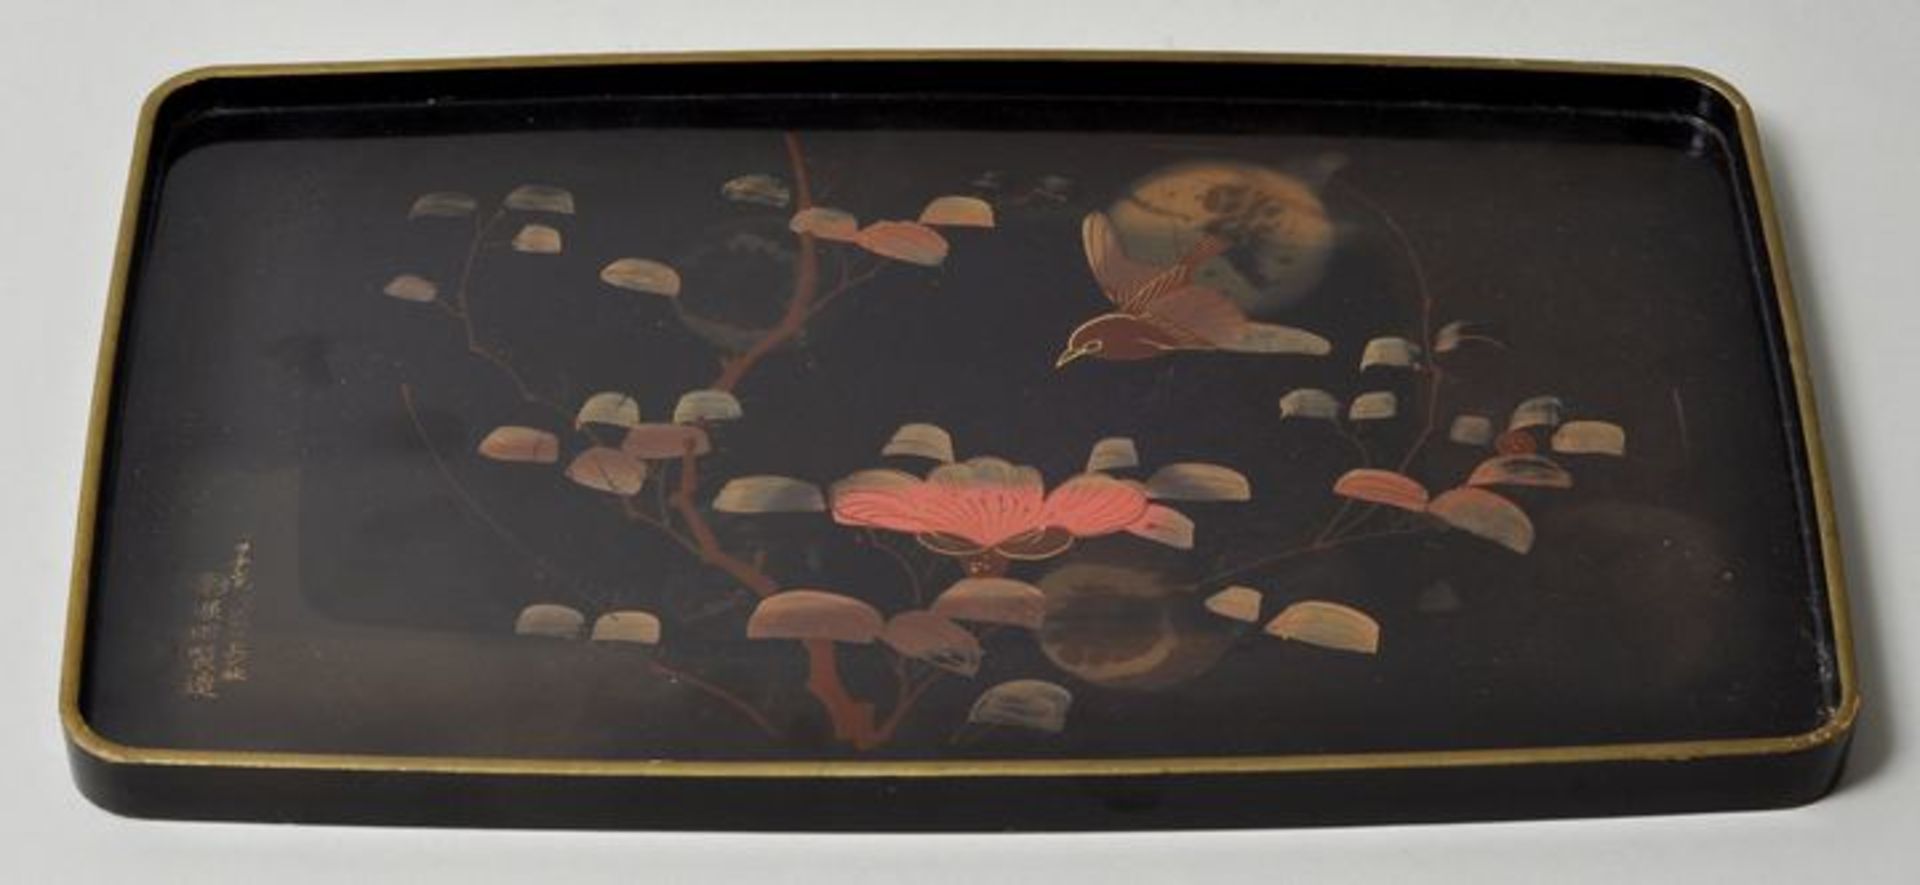 Lacktablett, Japan, 20. Jh.Holz, Malerei auf Schwarzlack: Singvogel inmitten der Zweige einer